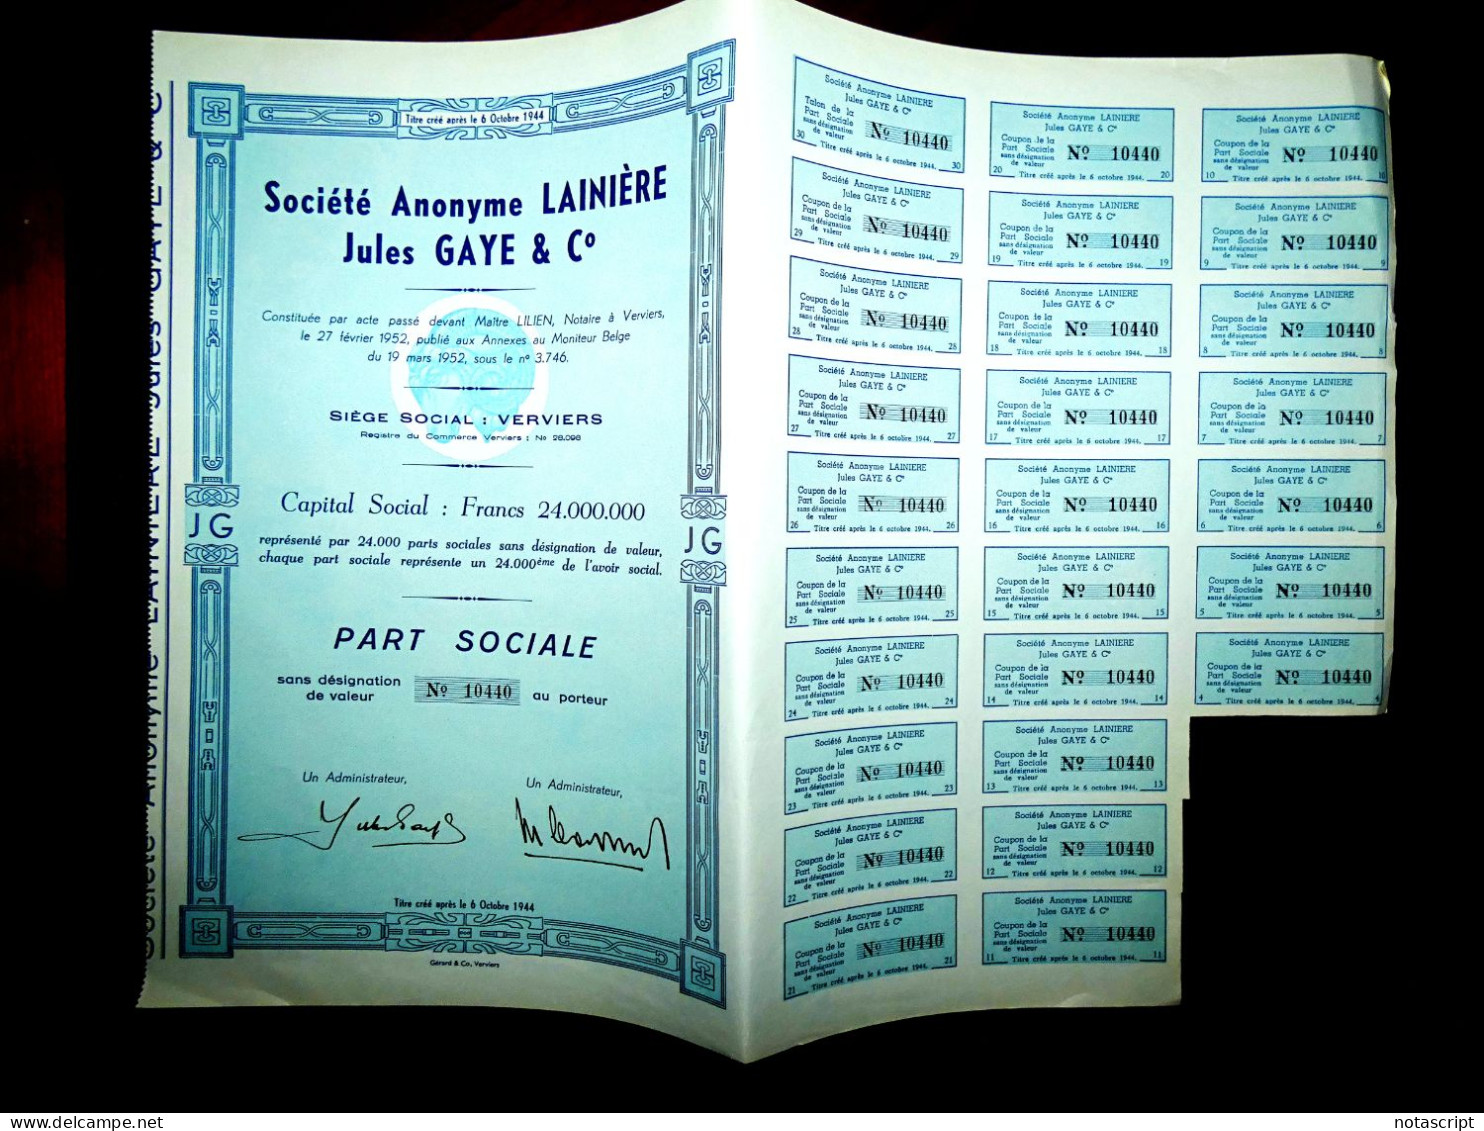 Société A,Lainière Jules Gaye & Co Verviers ,1952, Belgium Share Certificate - Textil